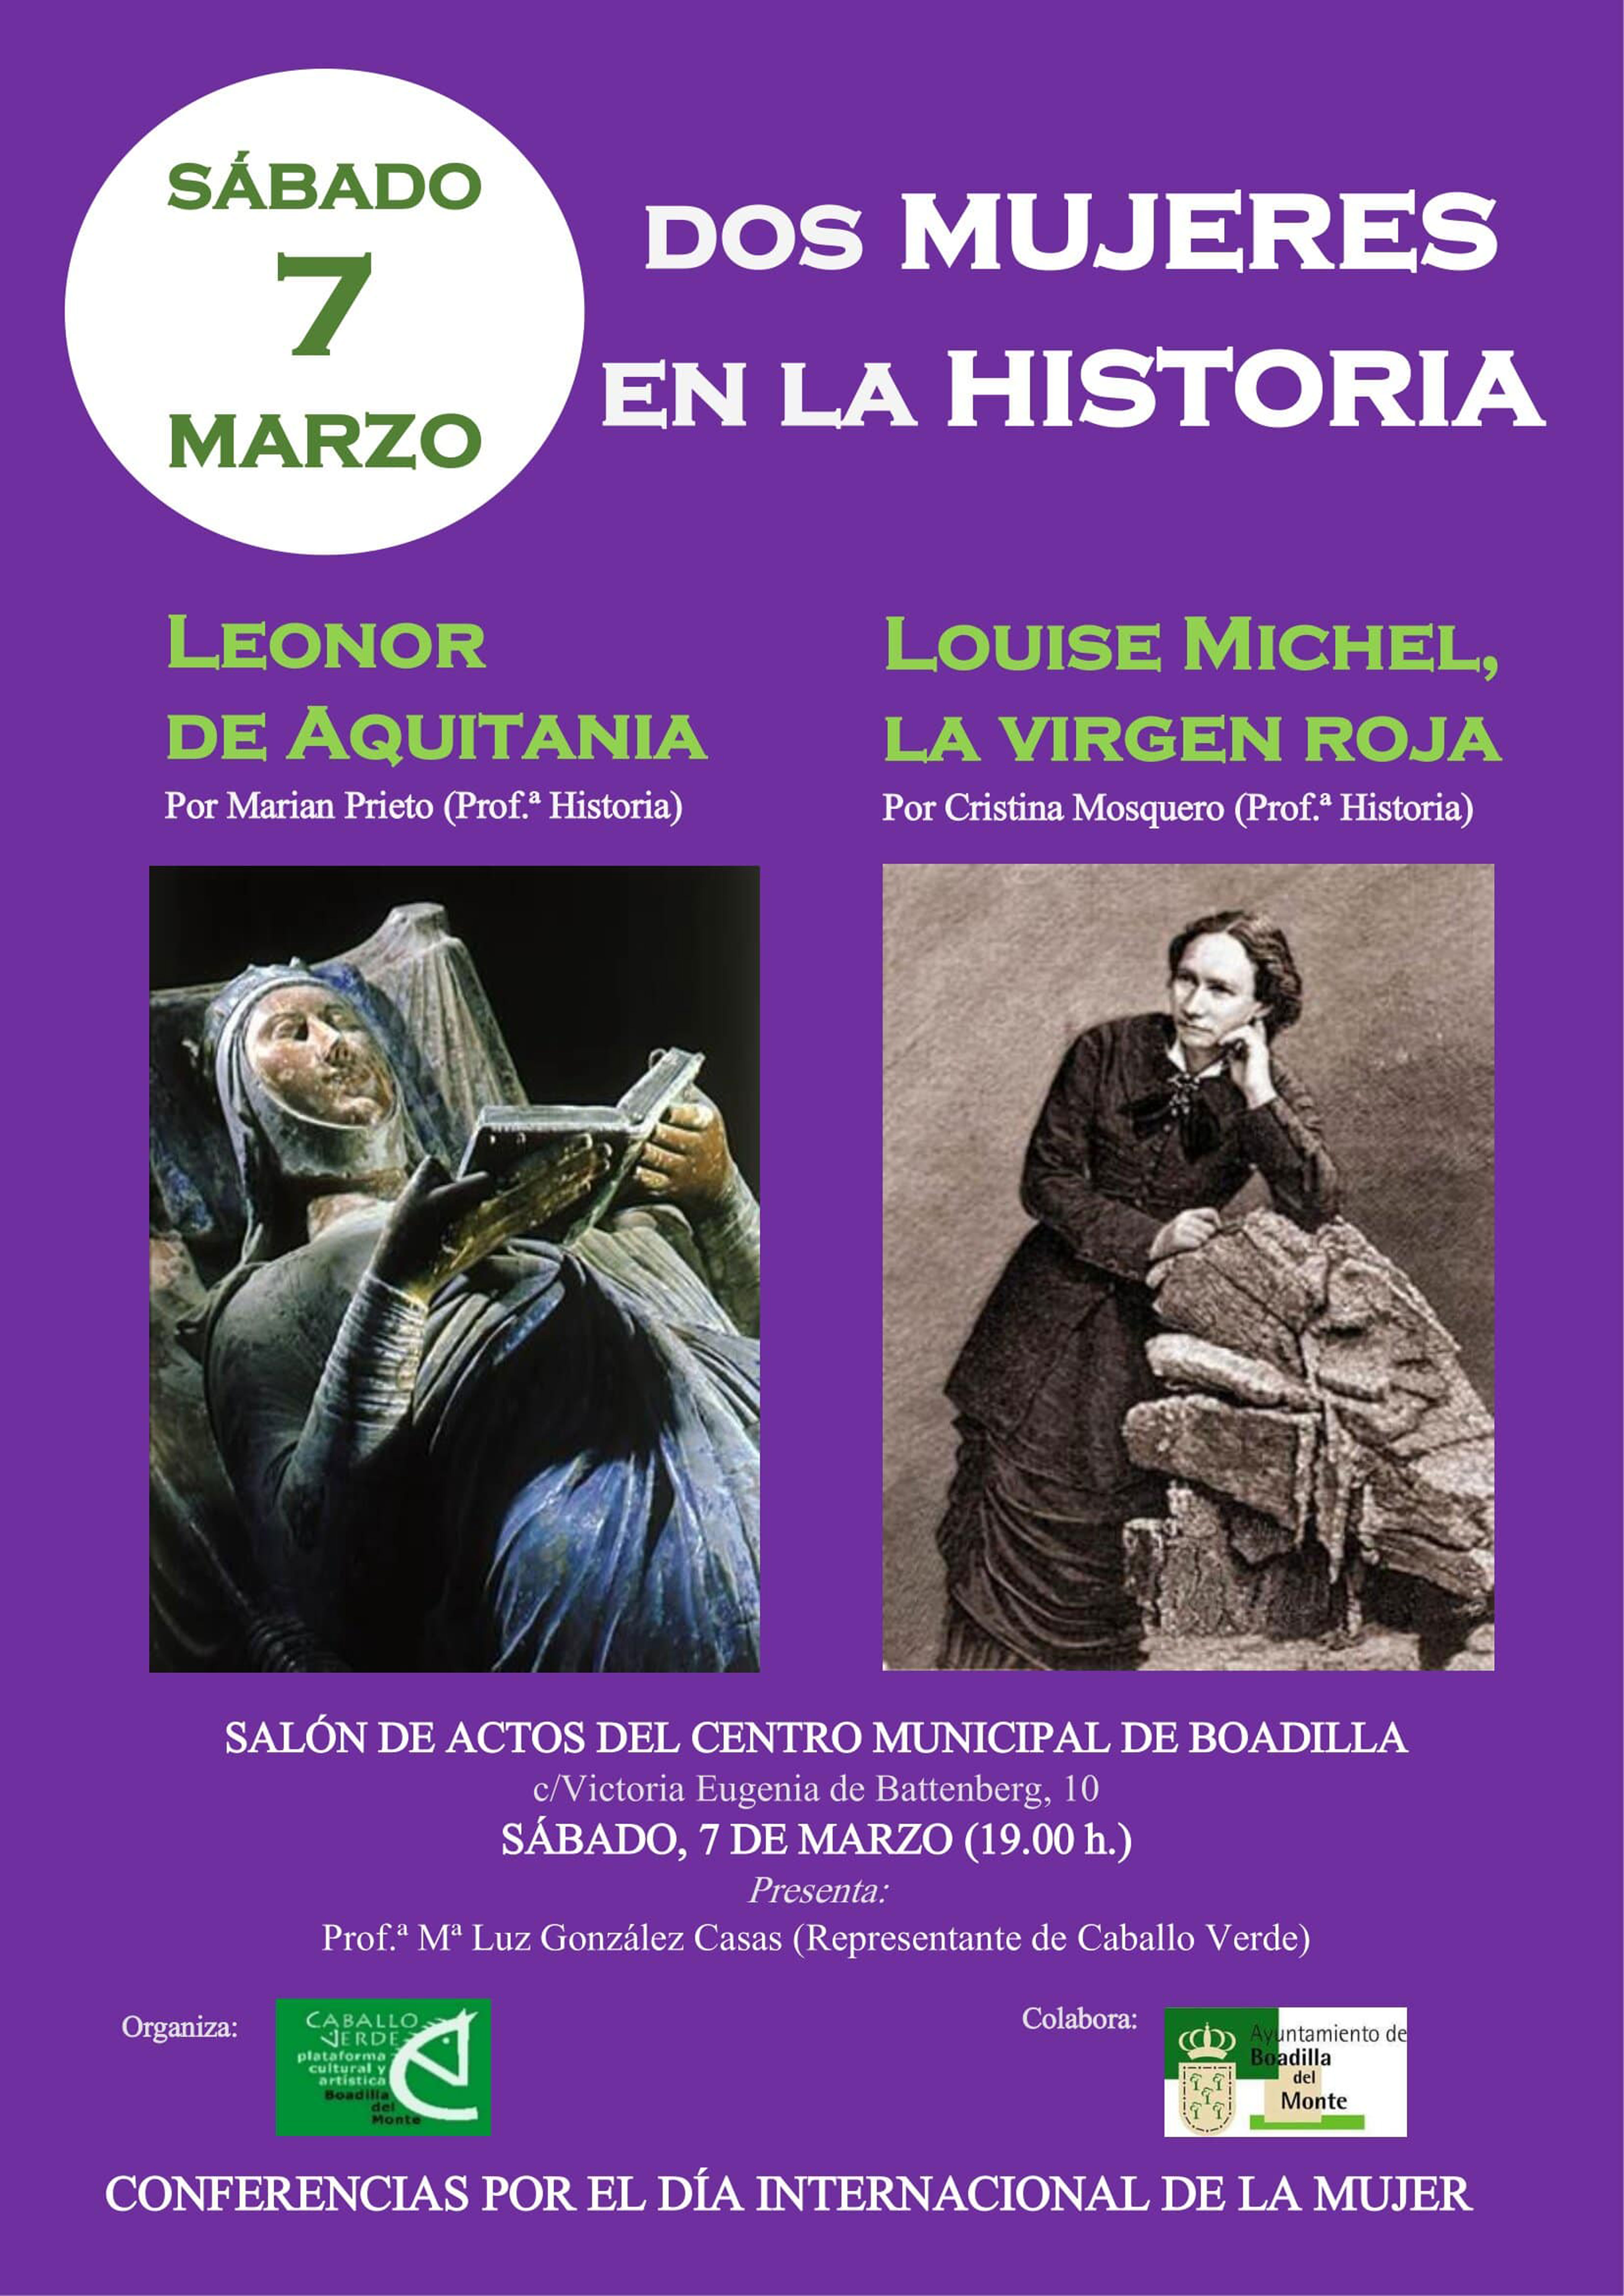 El sábado, conferencia sobre el papel de dos mujeres en la historia